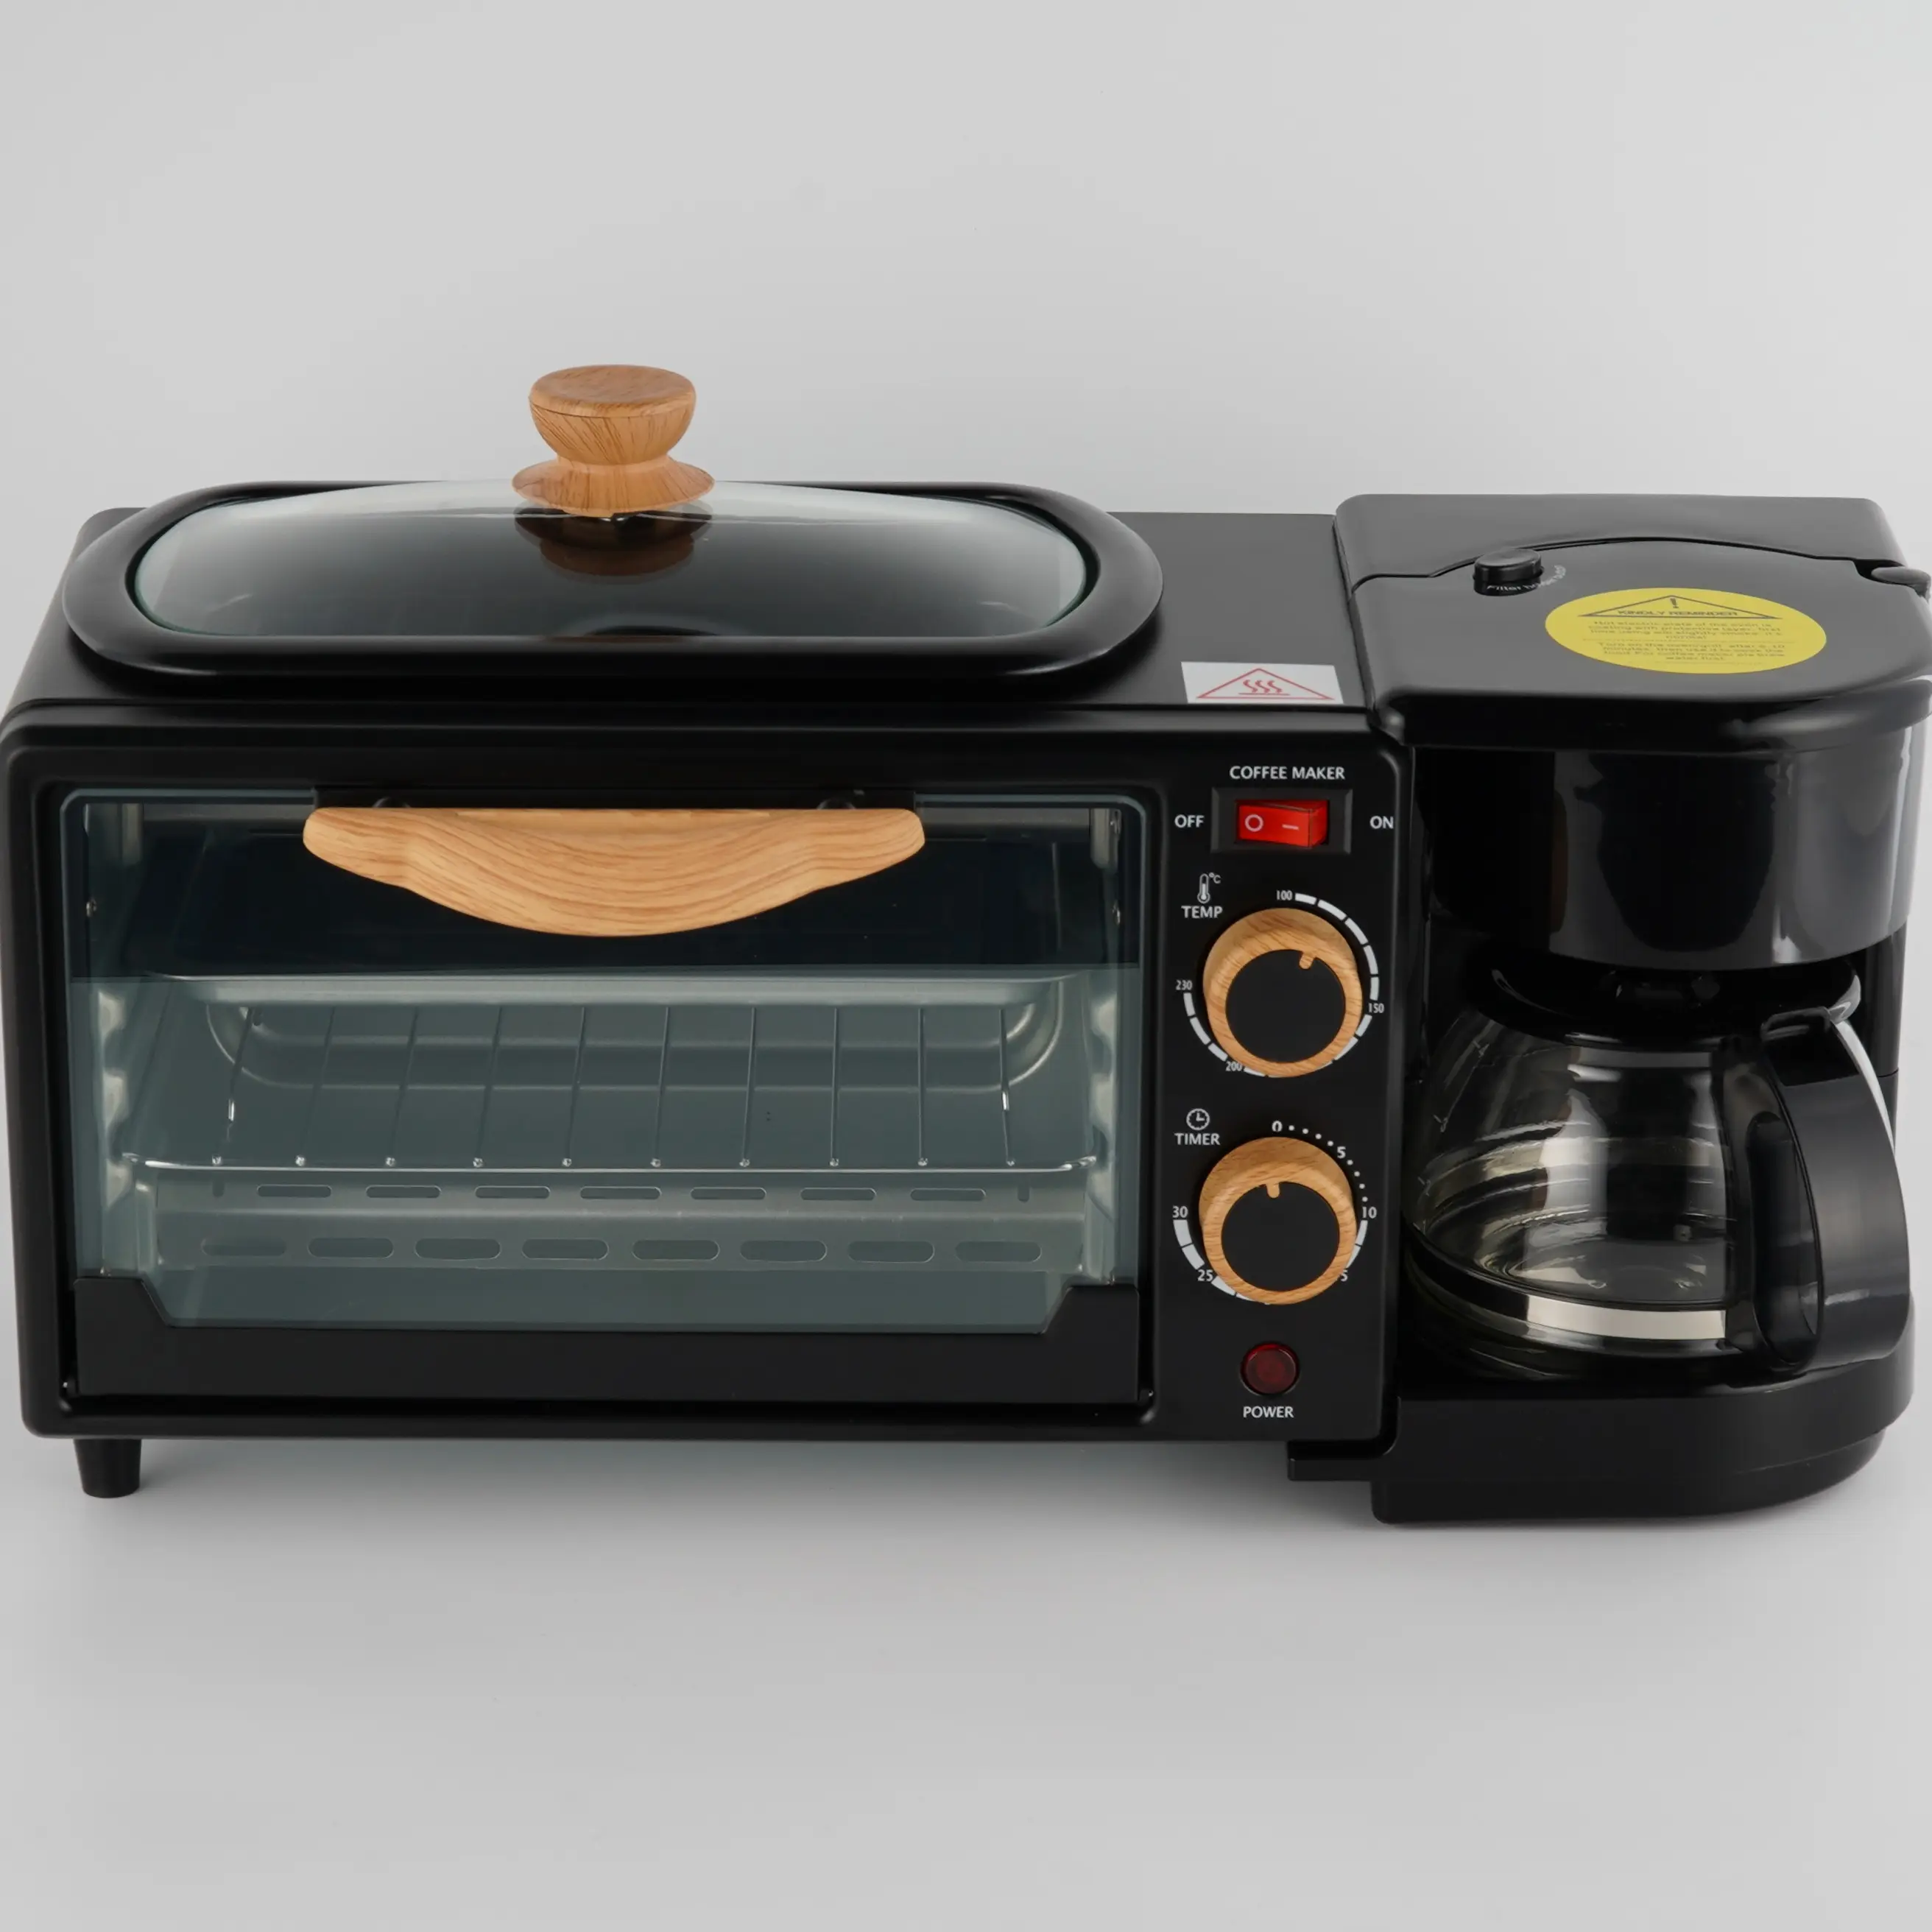 Новый дизайн, модная многофункциональная 3-в-1 машина для завтрака включает в себя тостер, 4-чашечную кофеварку и гриль